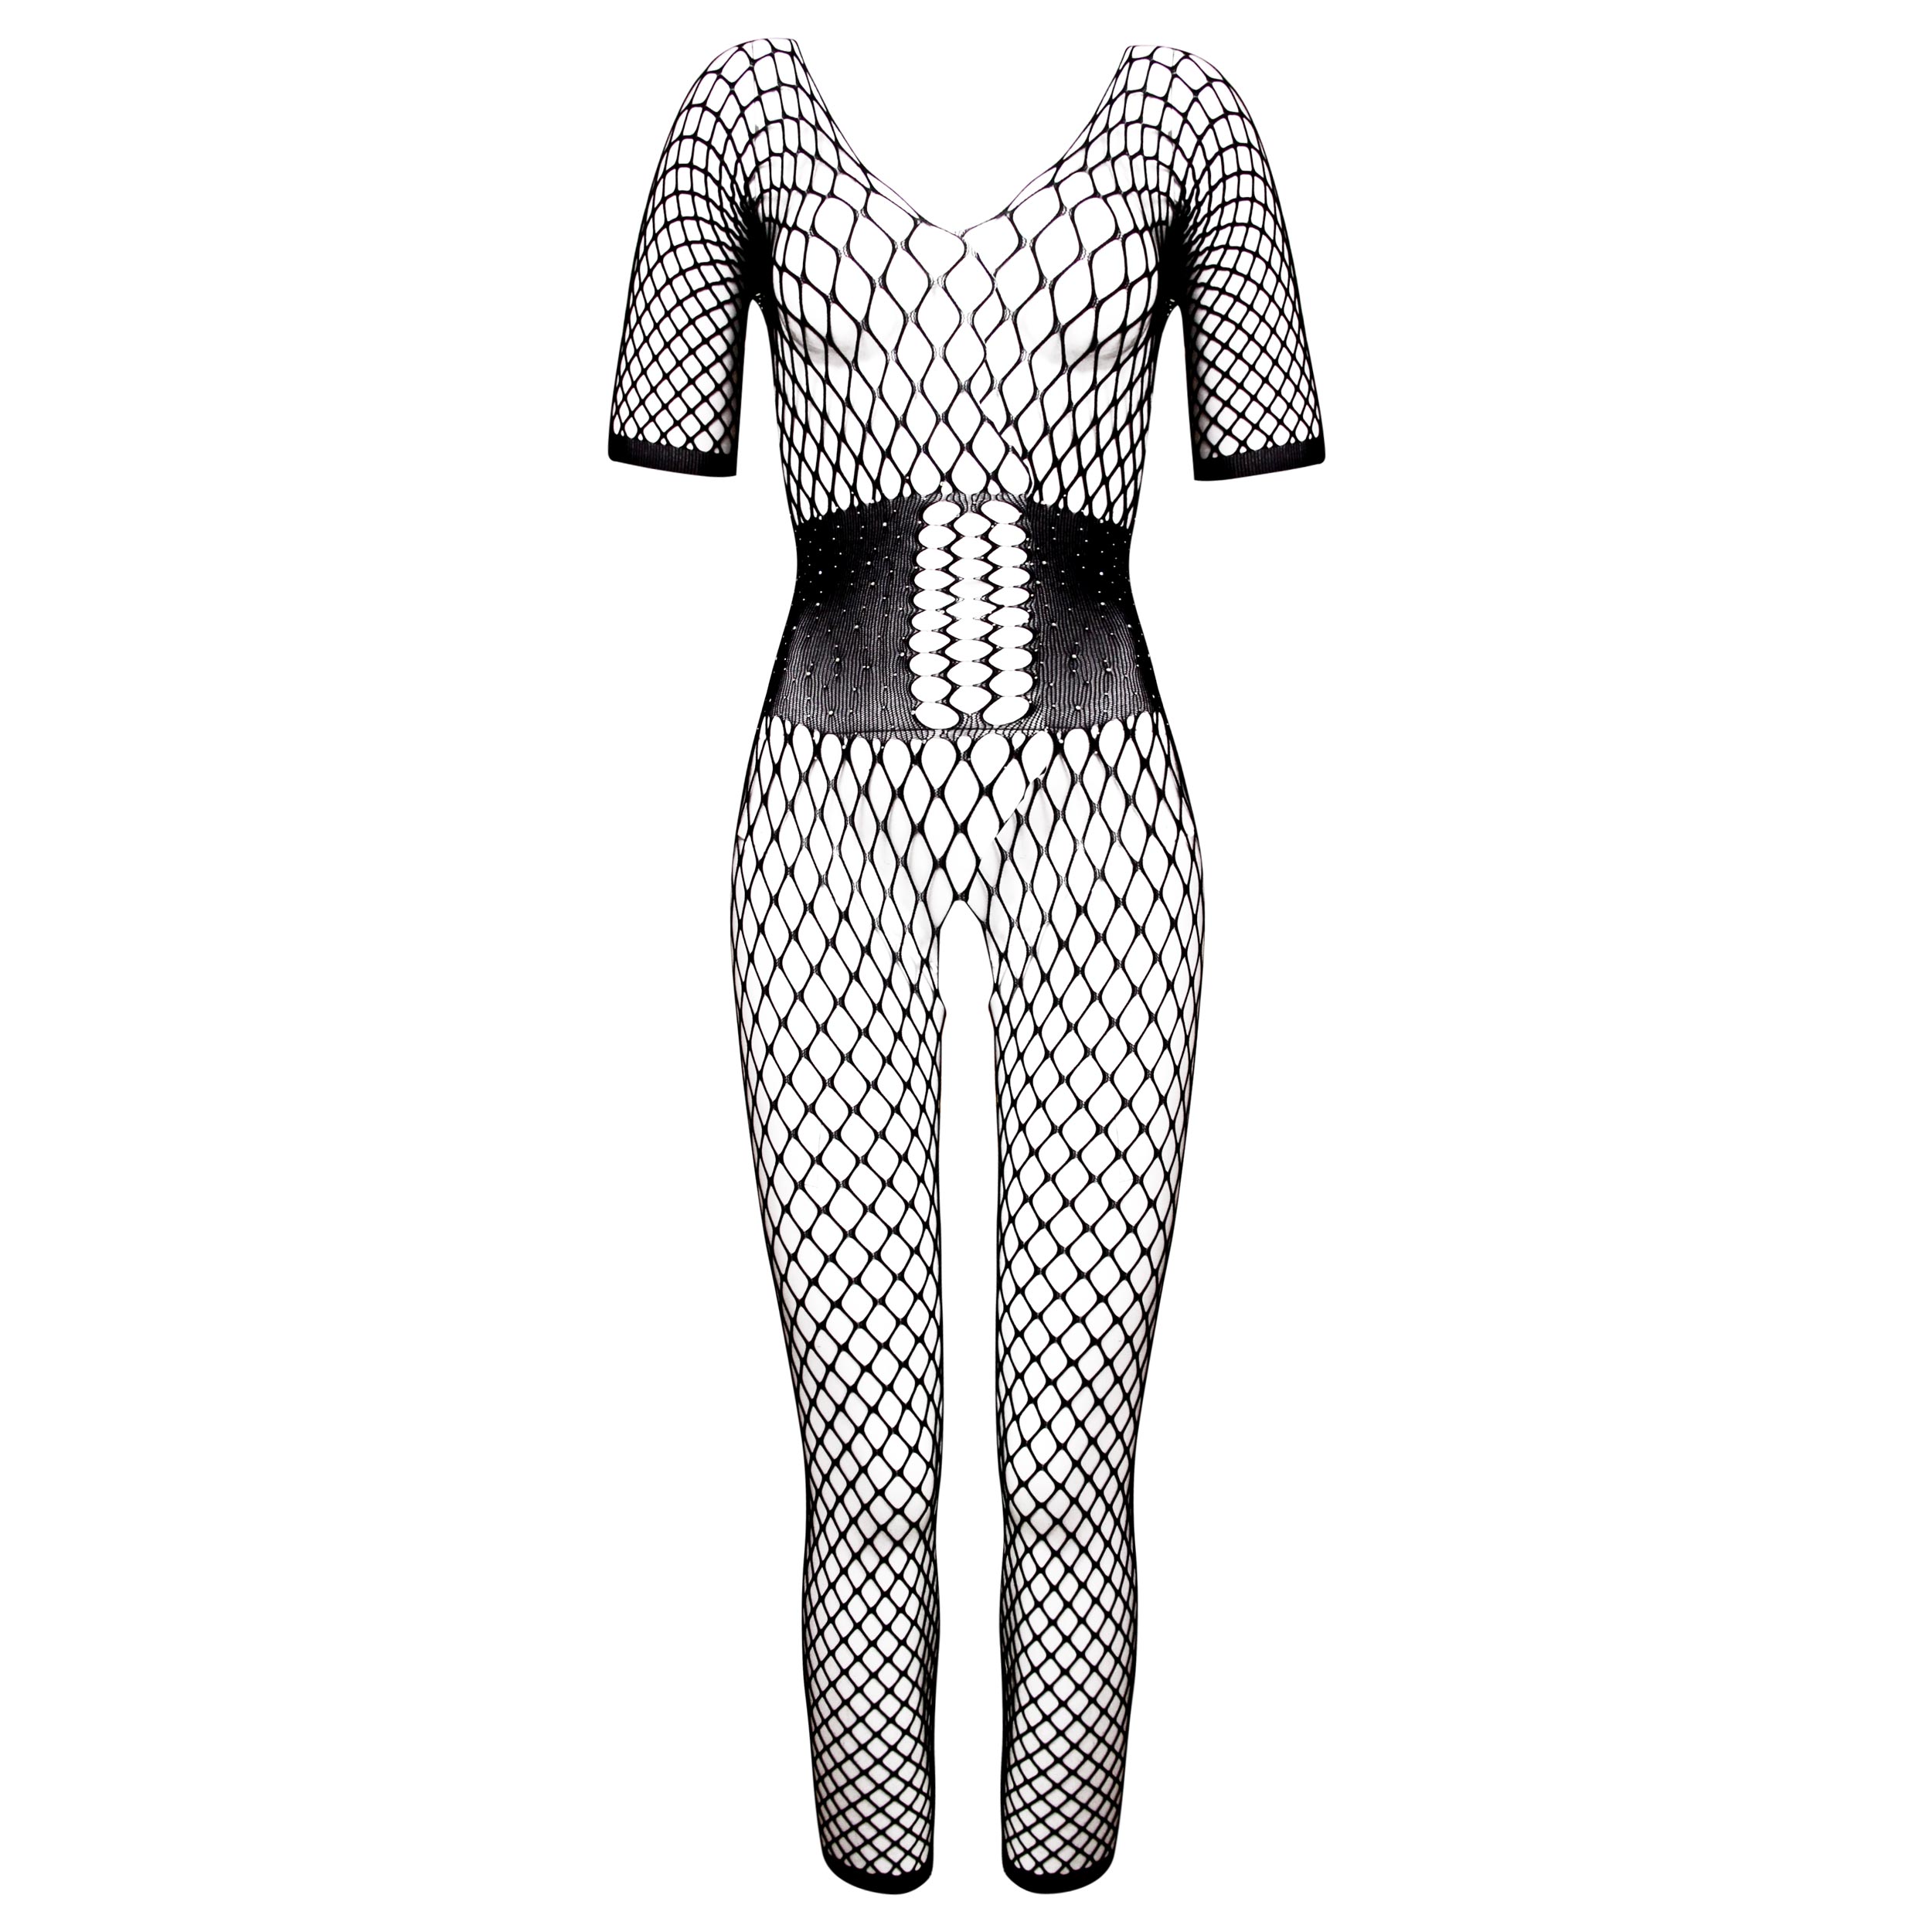 لباس خواب زنانه ماییلدا مدل فانتزی کد 4592-6940 رنگ مشکی